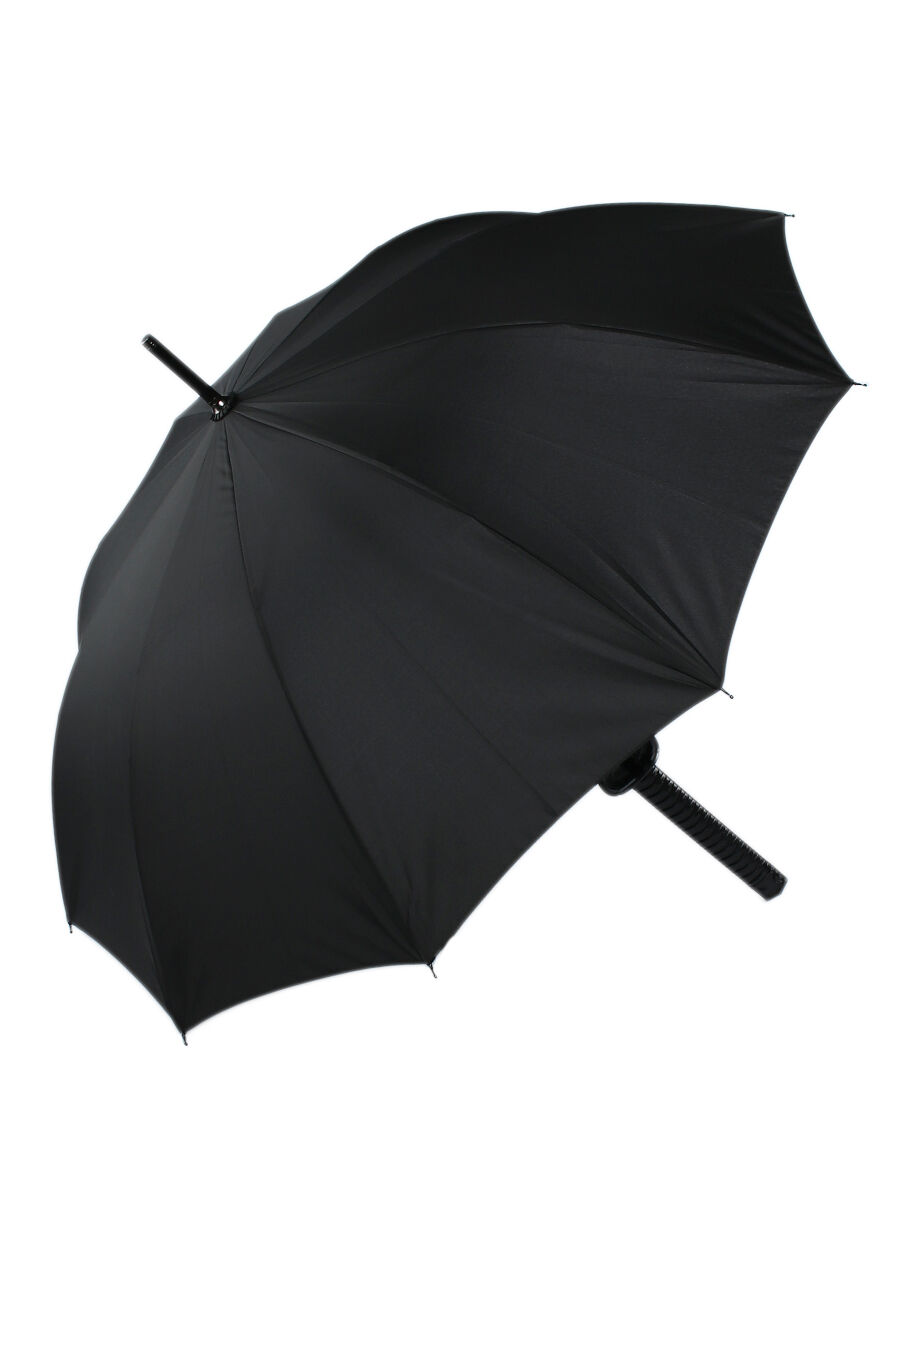 Зонт муж. Universal 998 полуавтомат трость (черный)